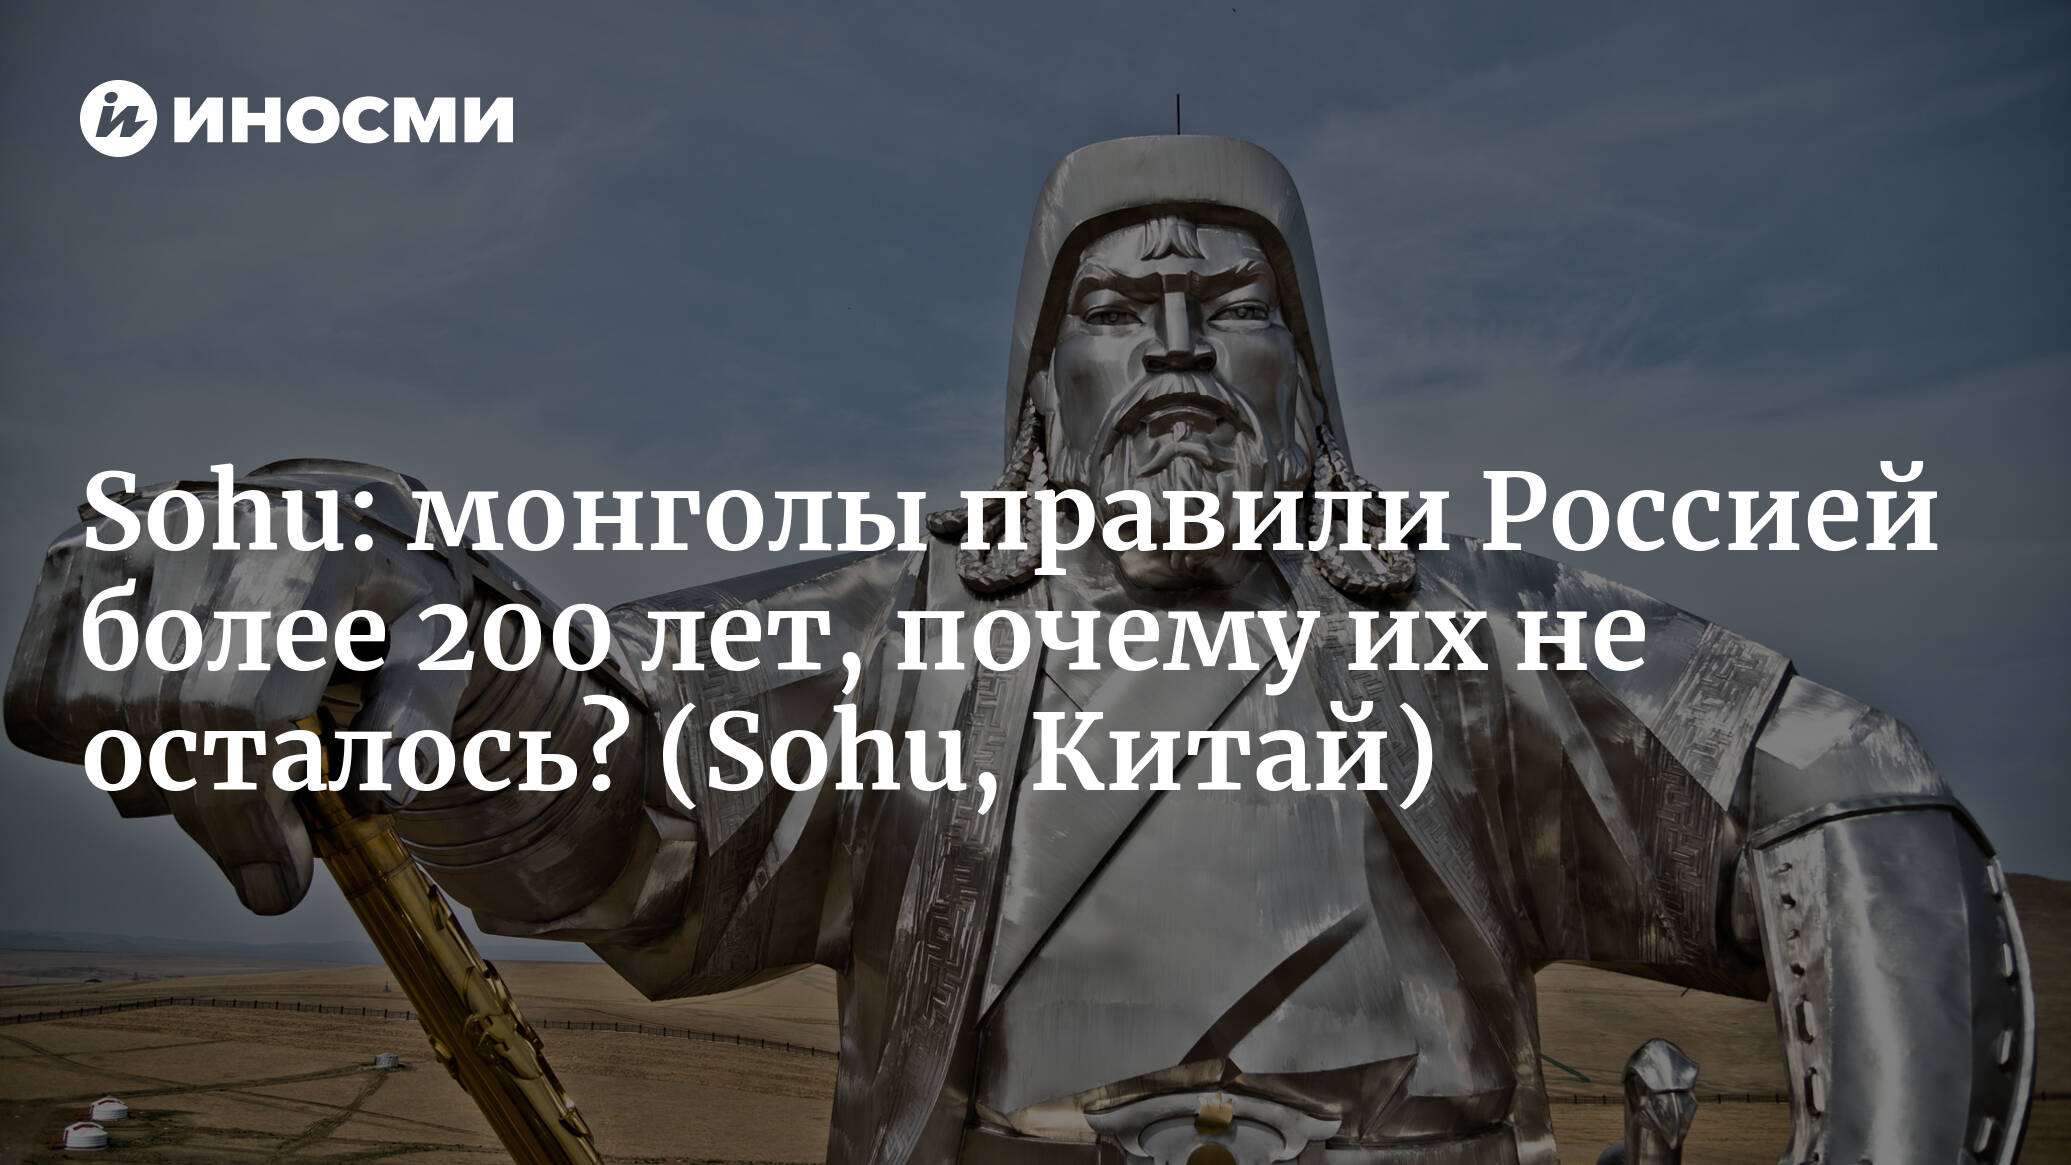 Sohu (Китай): монголы правили Россией более 200 лет, почему в России нет  монгольского этноса? | 07.10.2022, ИноСМИ